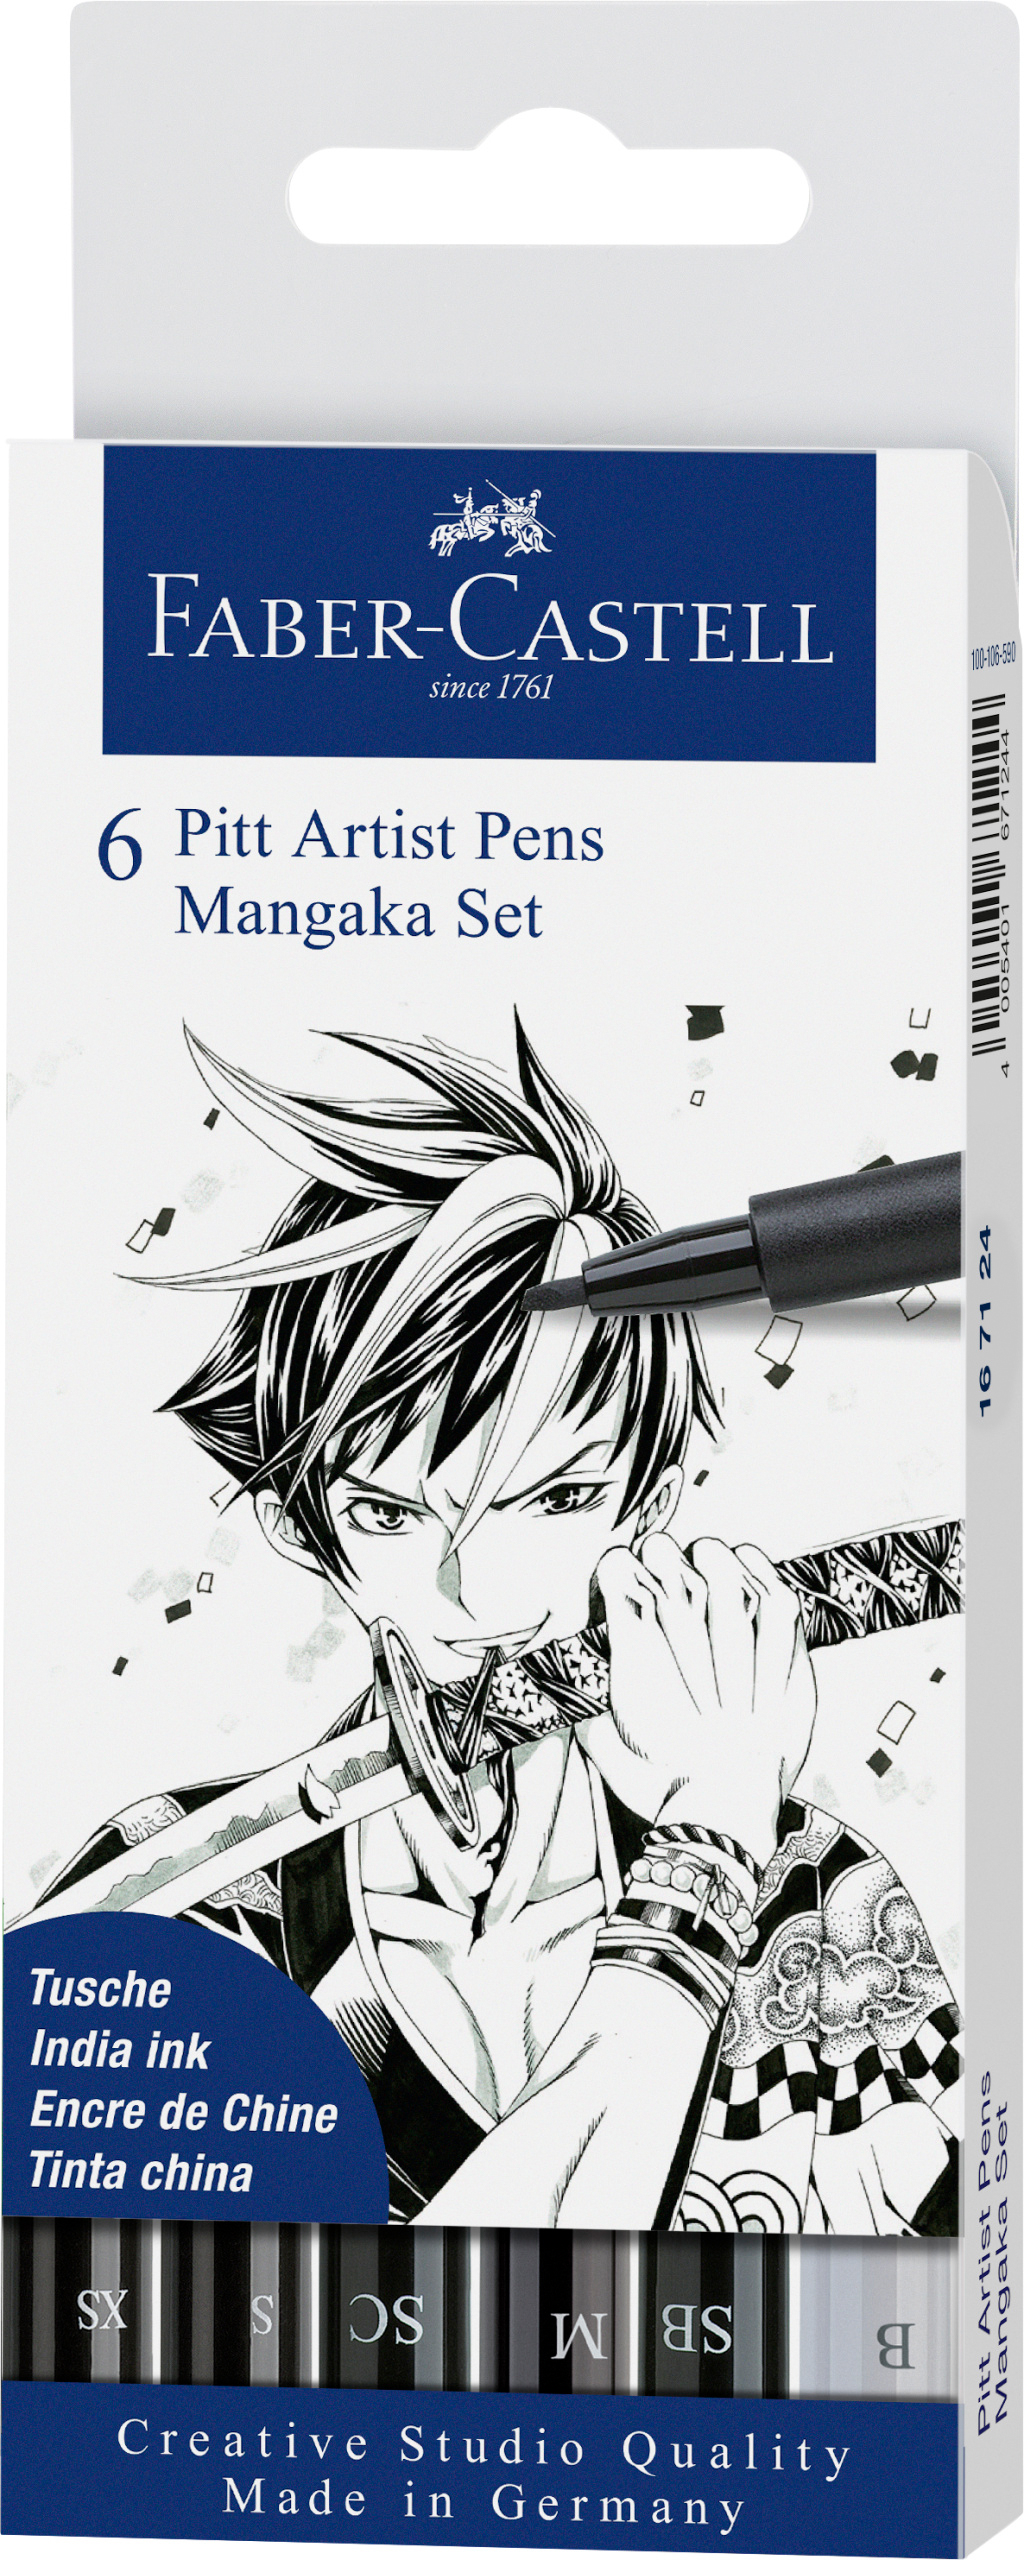 FABER-CASTELL Pitt Artist Pen Manga Mangaka 167124 noir 6 pcs. noir 6 pcs.